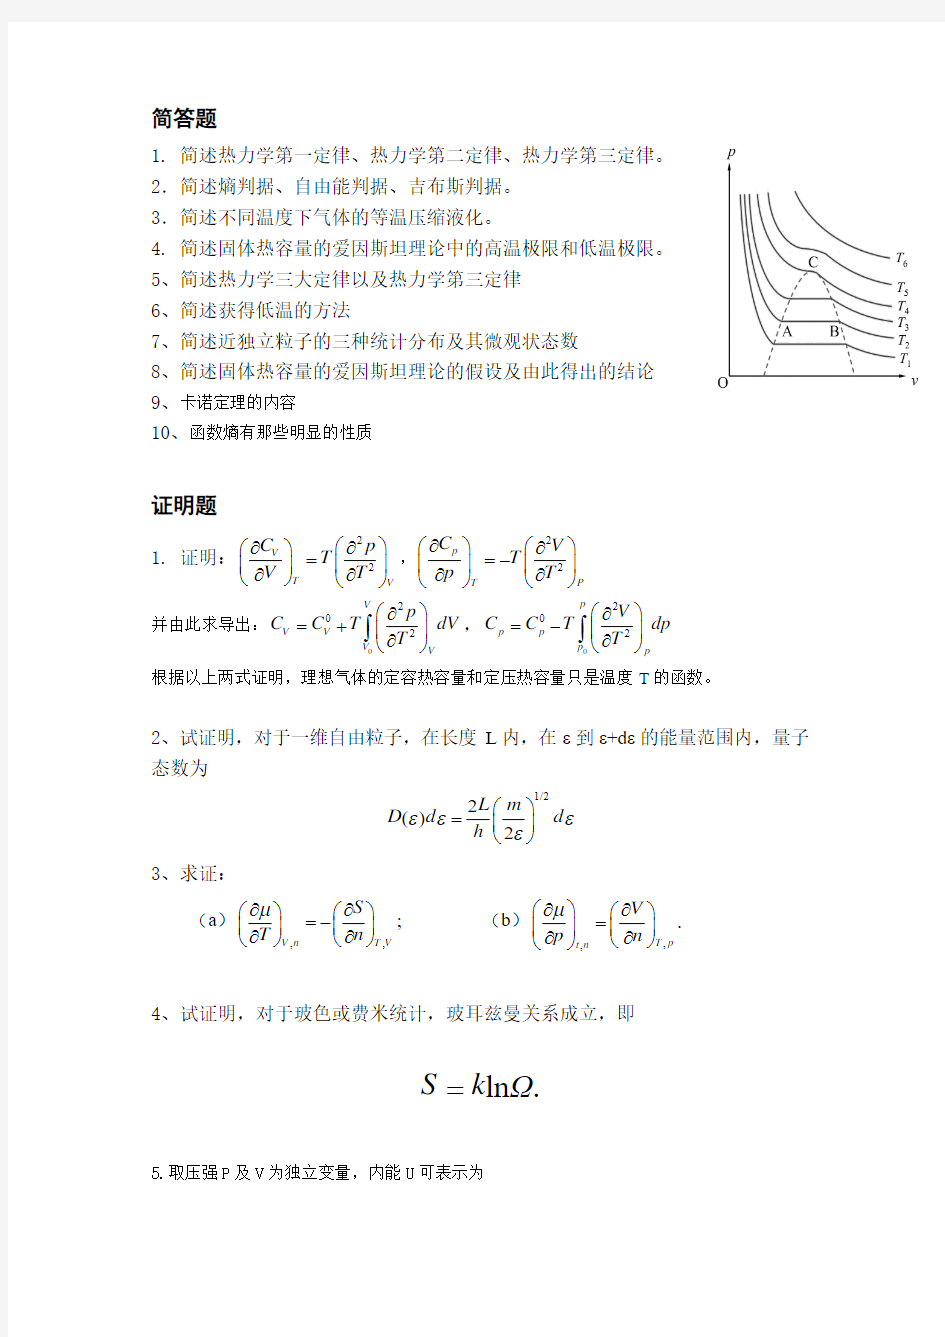 贵州大学 电技111 热力学统计物理简答证明计算